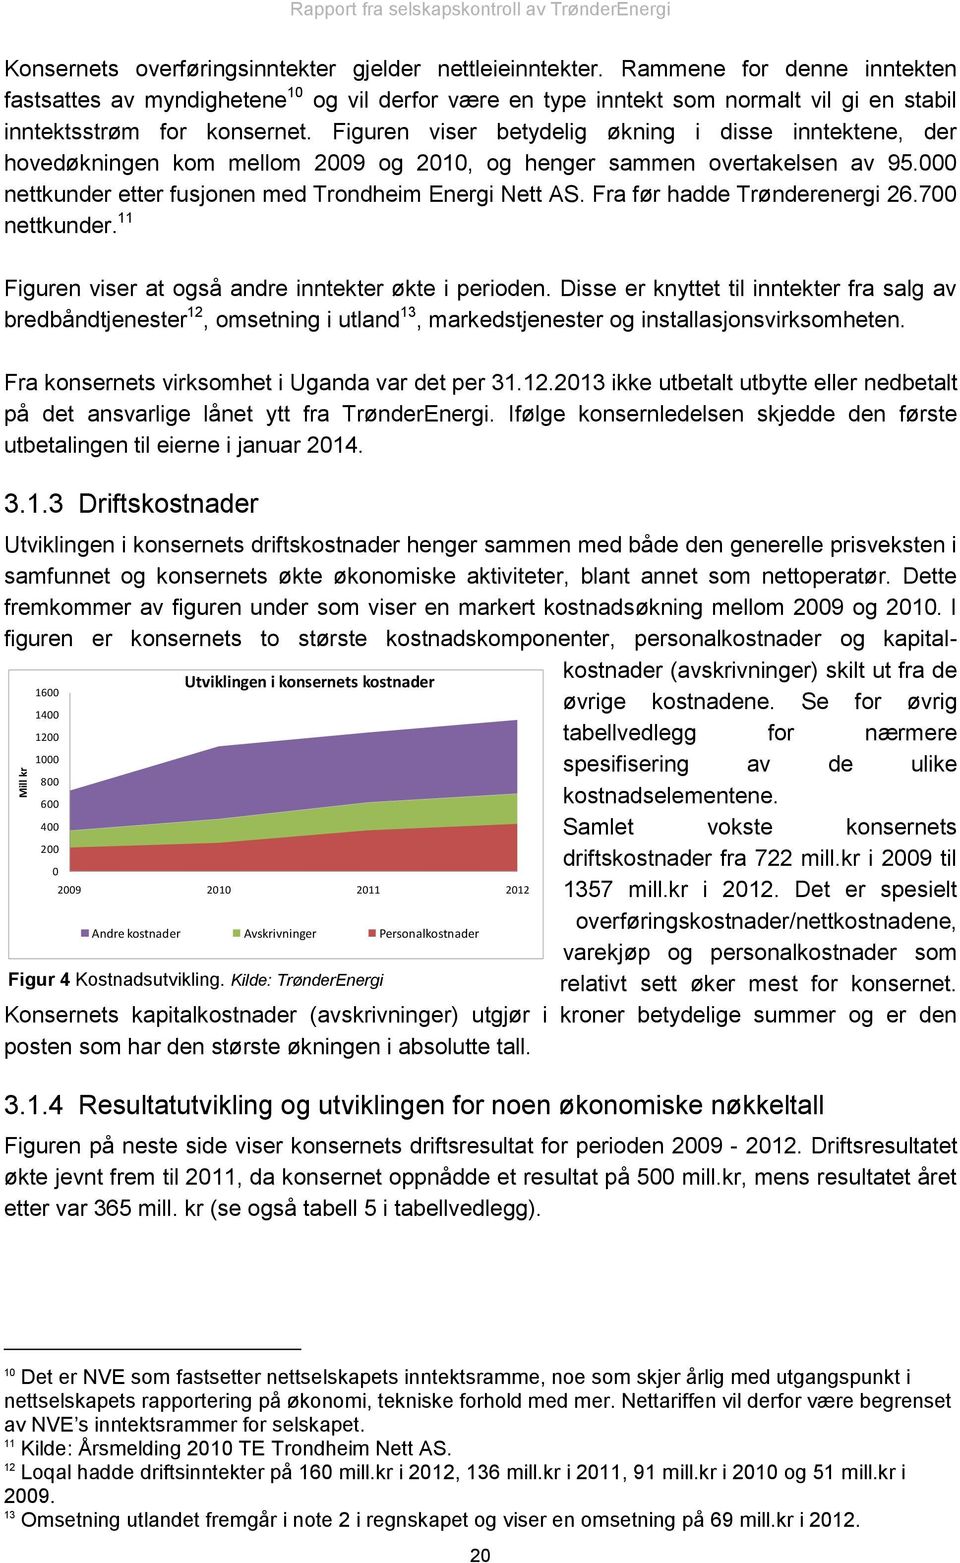 Figuren viser betydelig økning i disse inntektene, der hovedøkningen kom mellom 2009 og 2010, og henger sammen overtakelsen av 95.000 nettkunder etter fusjonen med Trondheim Energi Nett AS.